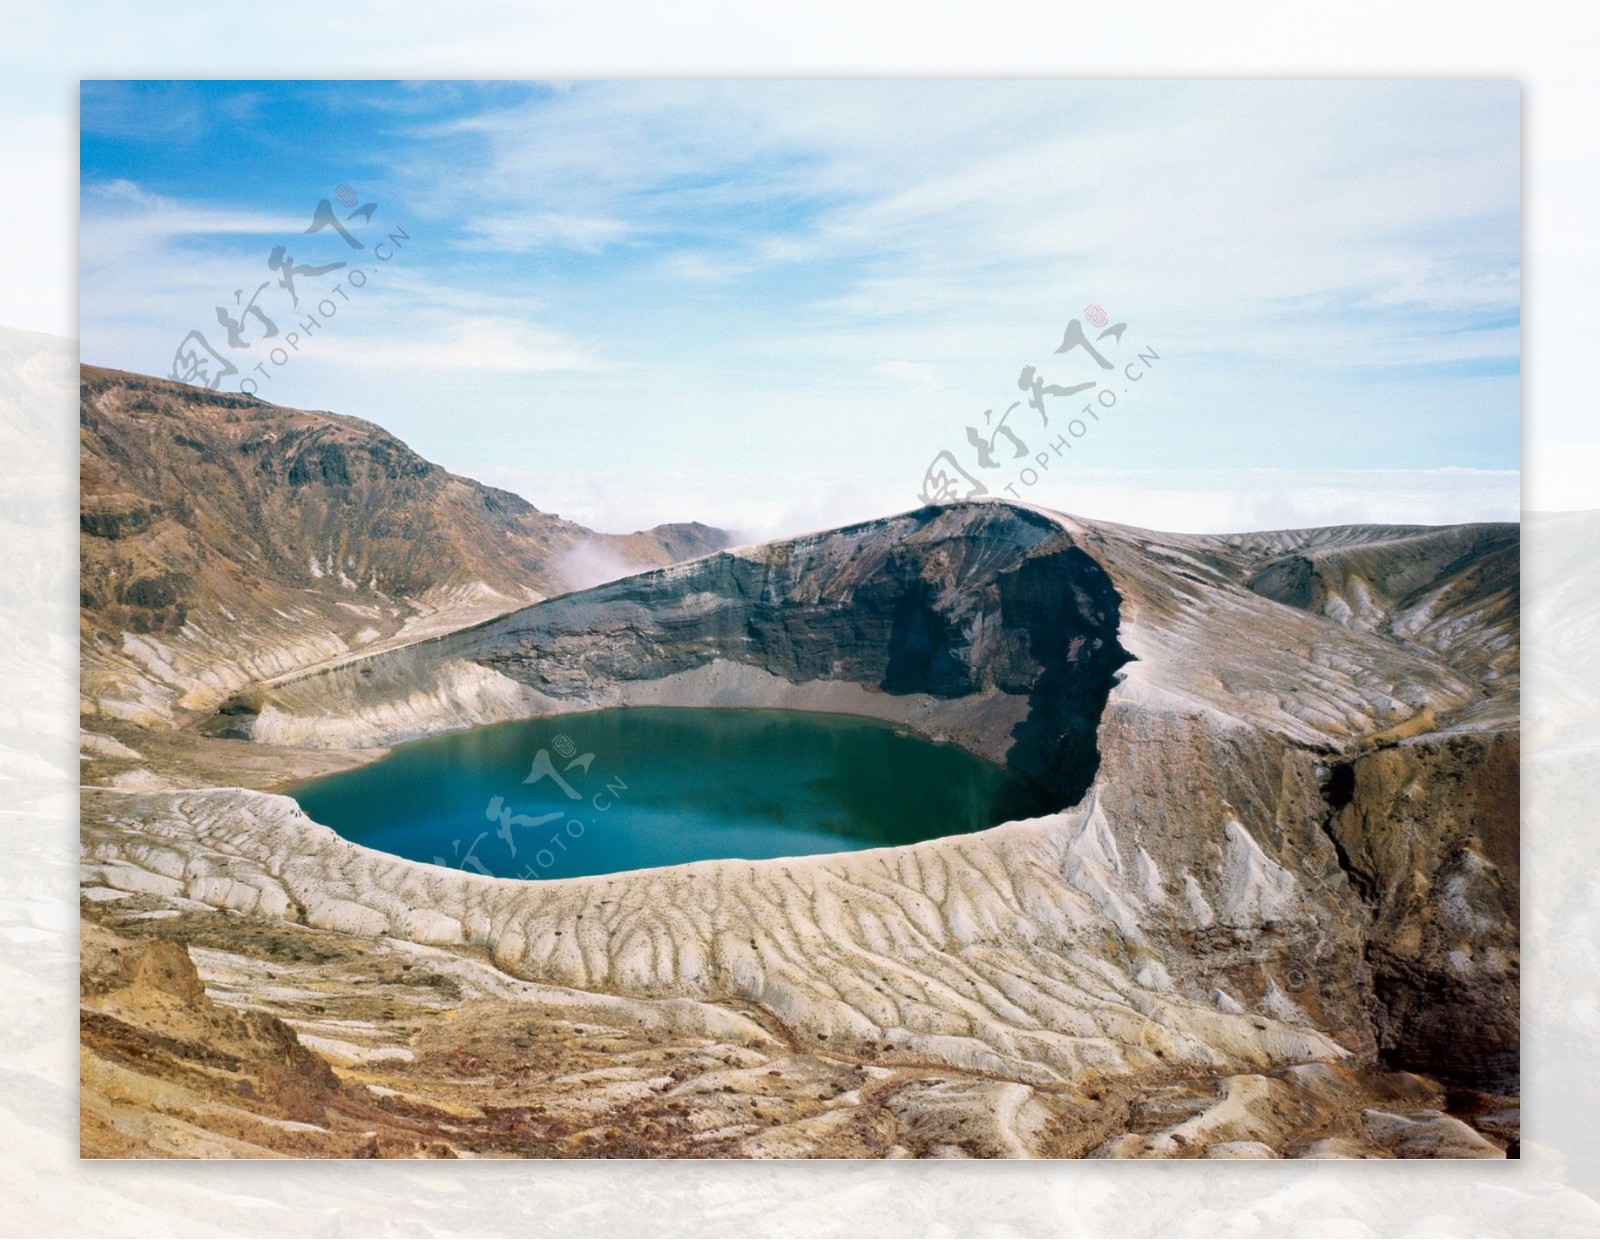 火山湖图片